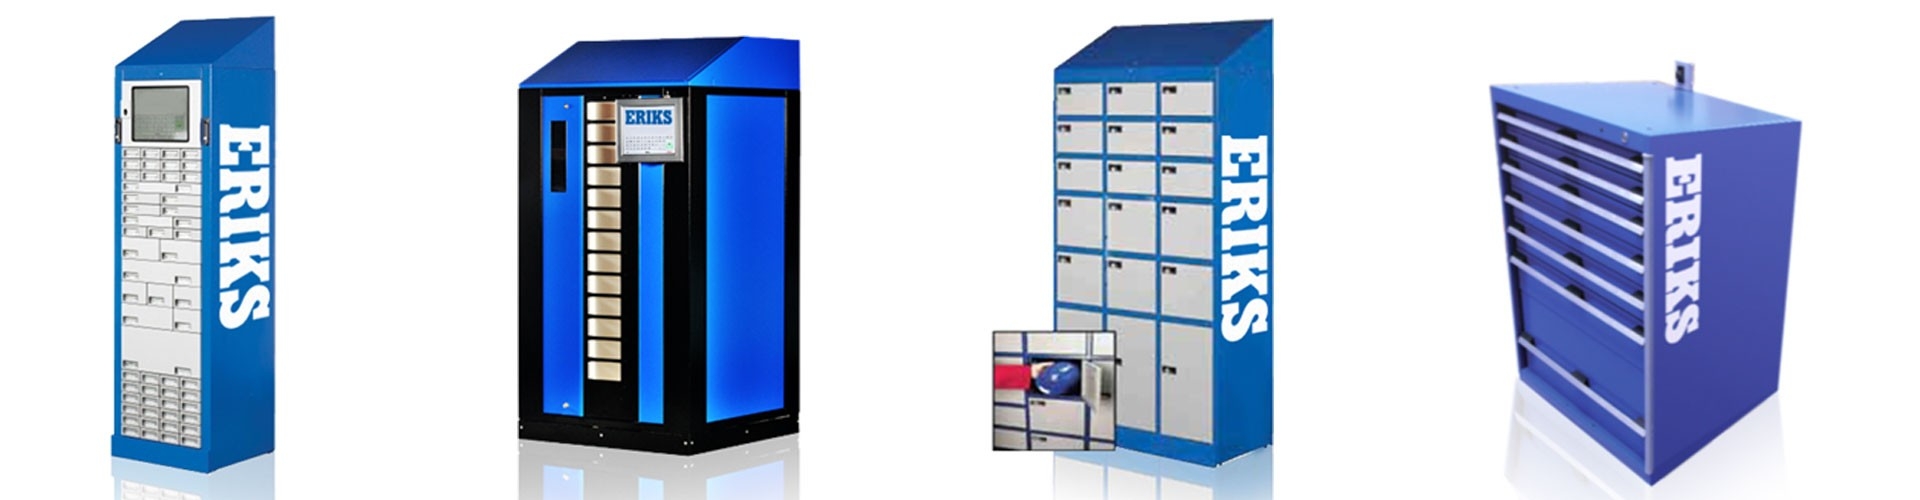 Vending Machines (Verkaufsautomaten) - Modellübersicht. Das richtige Modell basierend auf den potenziellen Artikeln und der Lagerumgebung  auswählen.